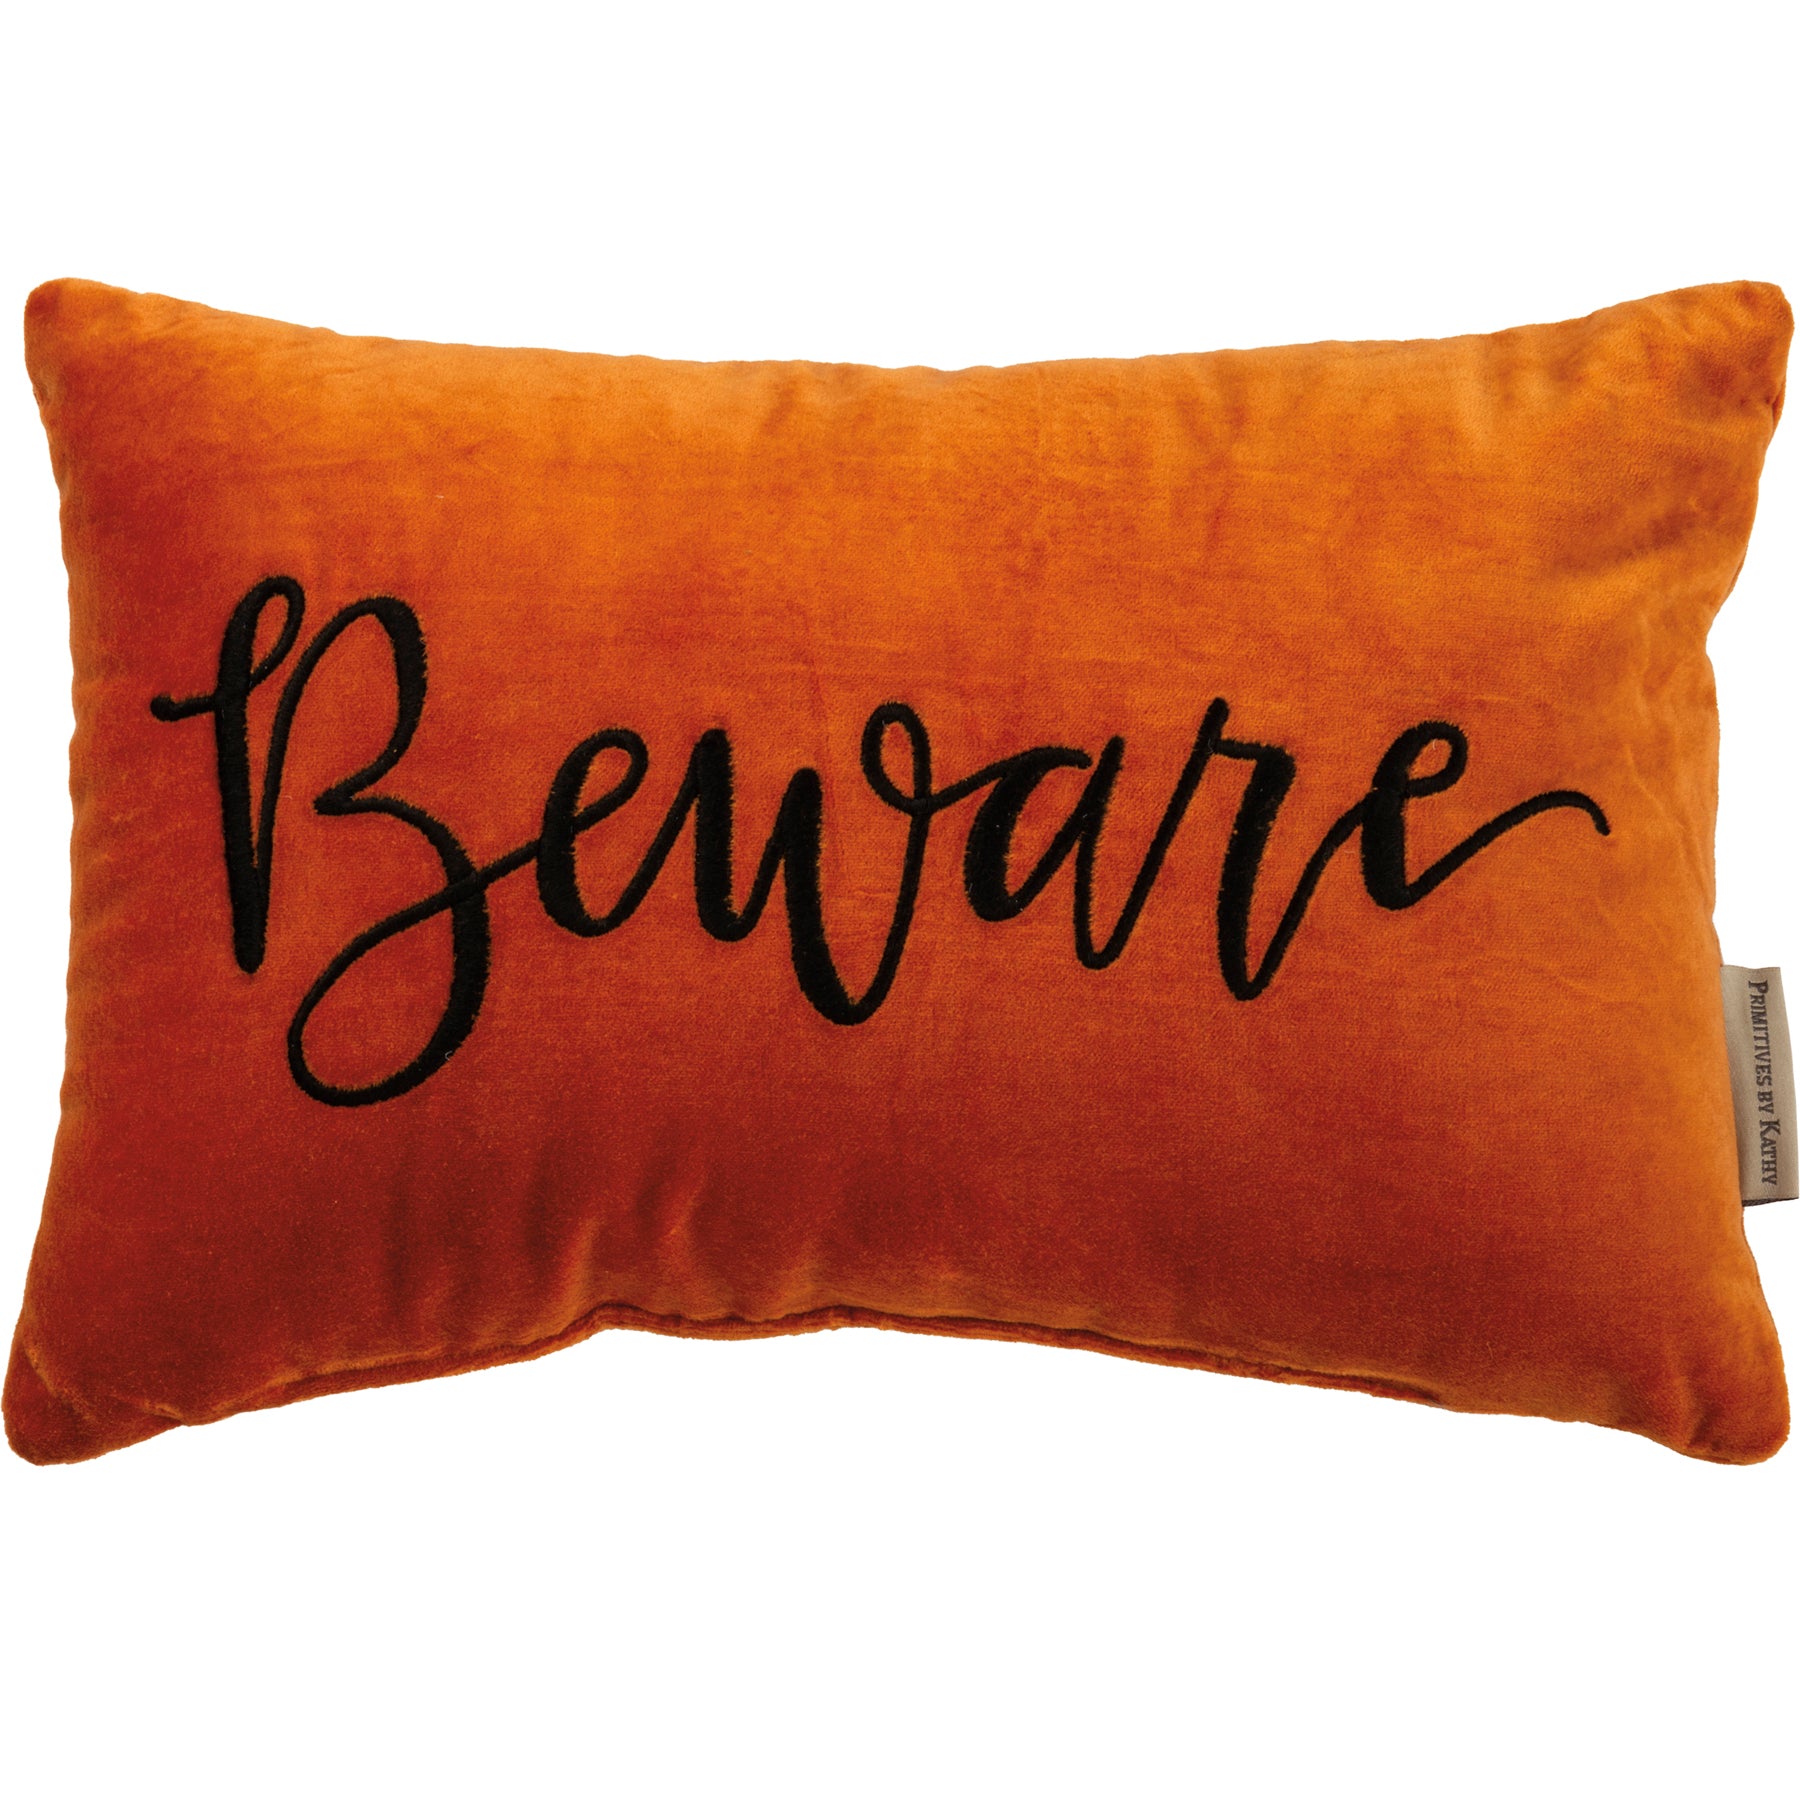 Elegant Beware Pillow